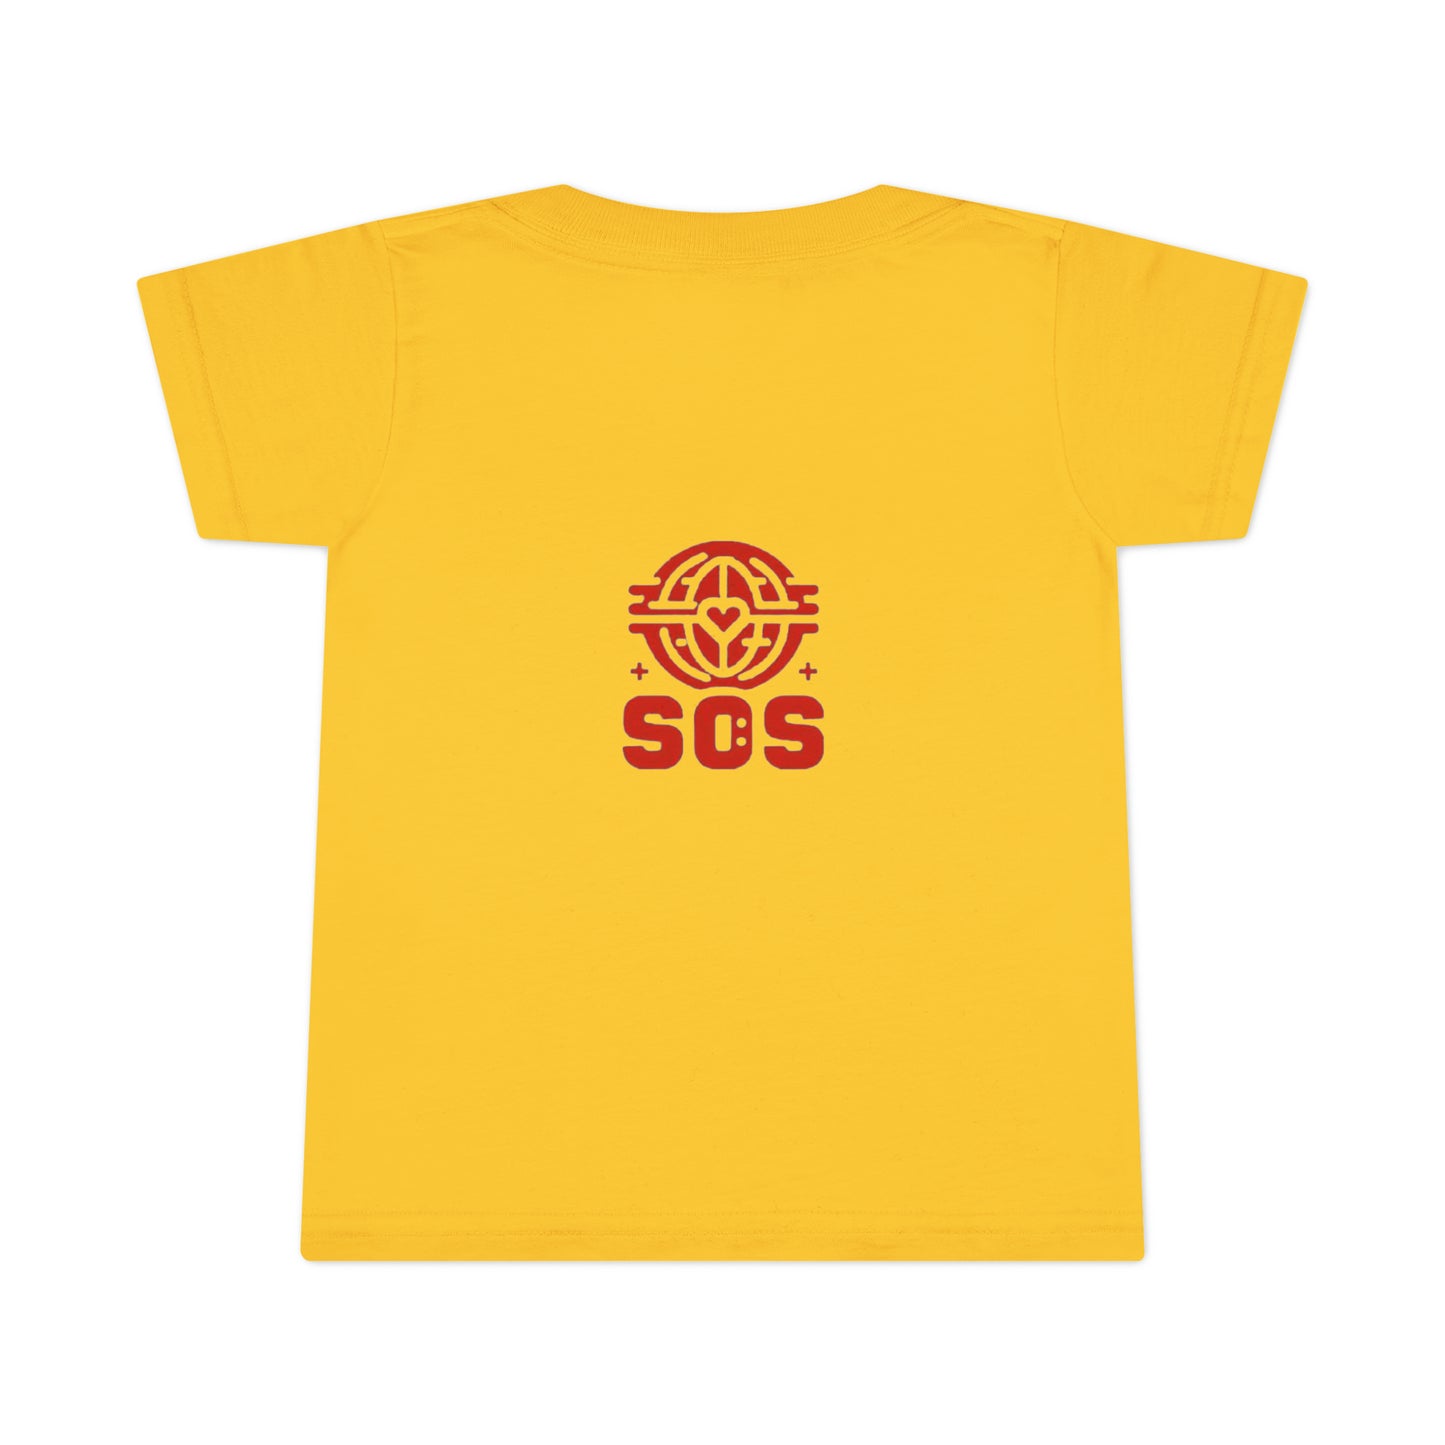 "SOS Kids: T-shirts Engagés pour les Petits Héros"